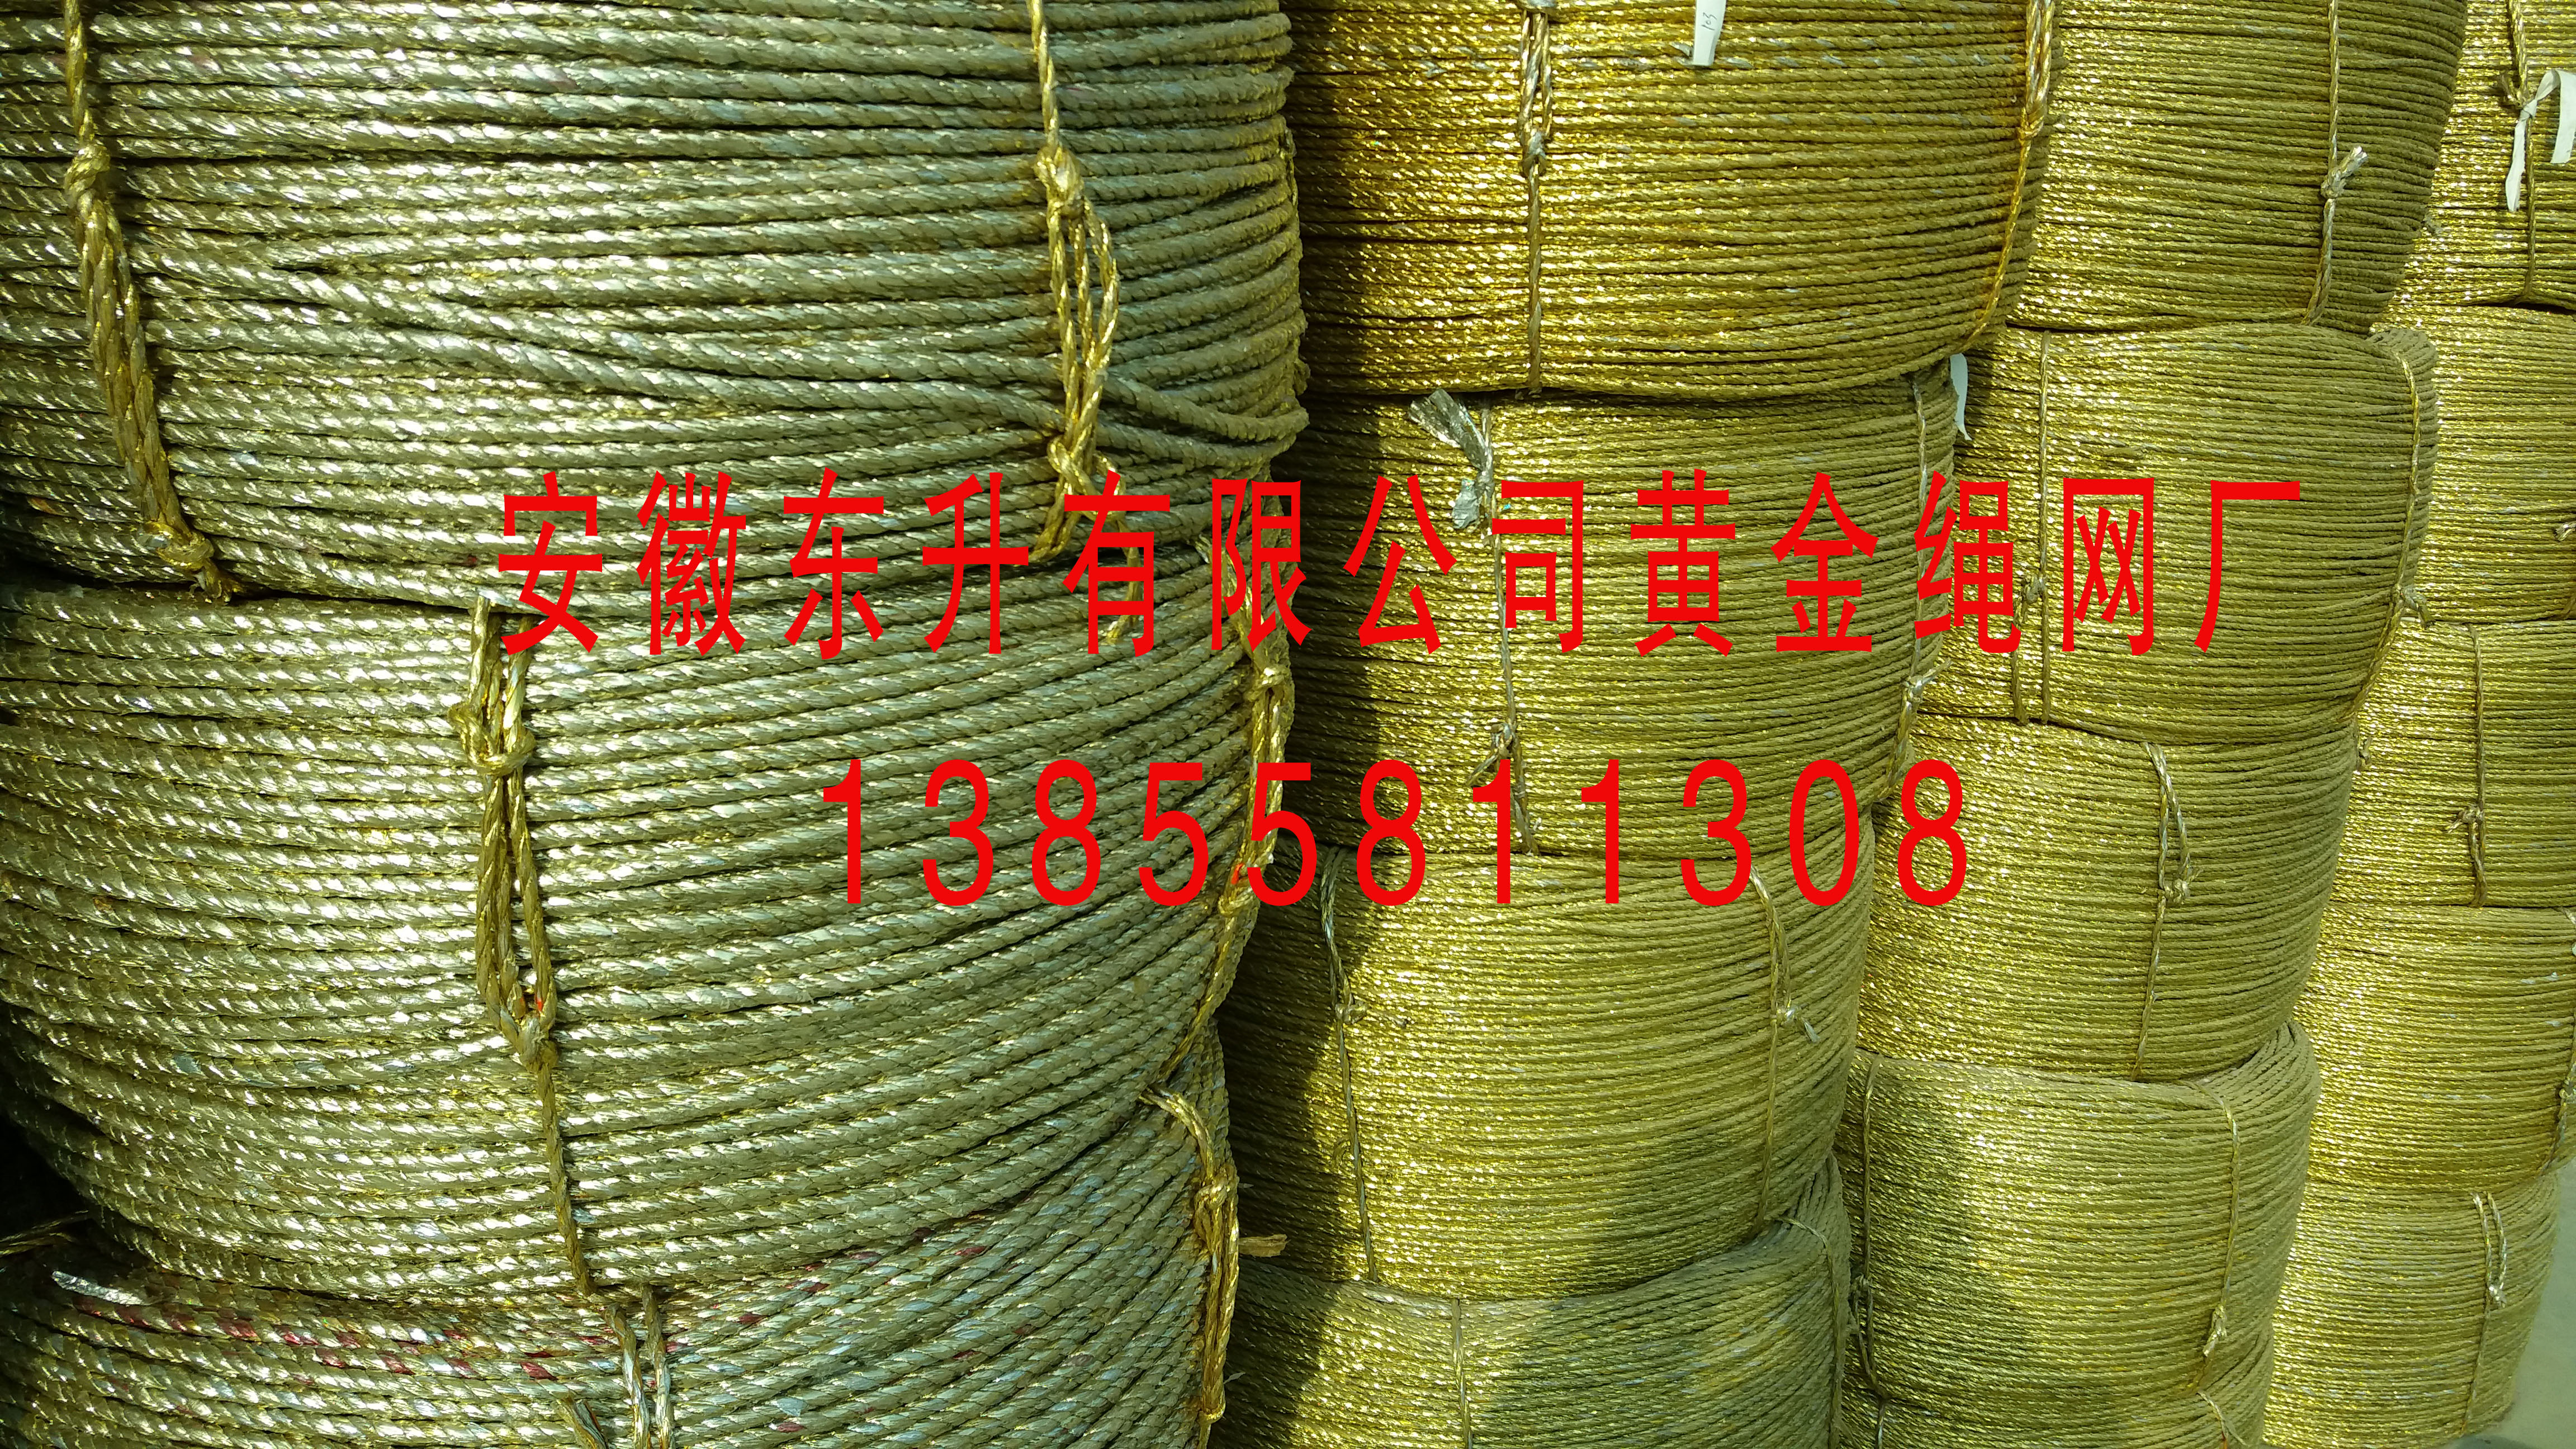 安徽省黄金绳子电化铝绳供应黄金绳价格黄金绳包绳图片